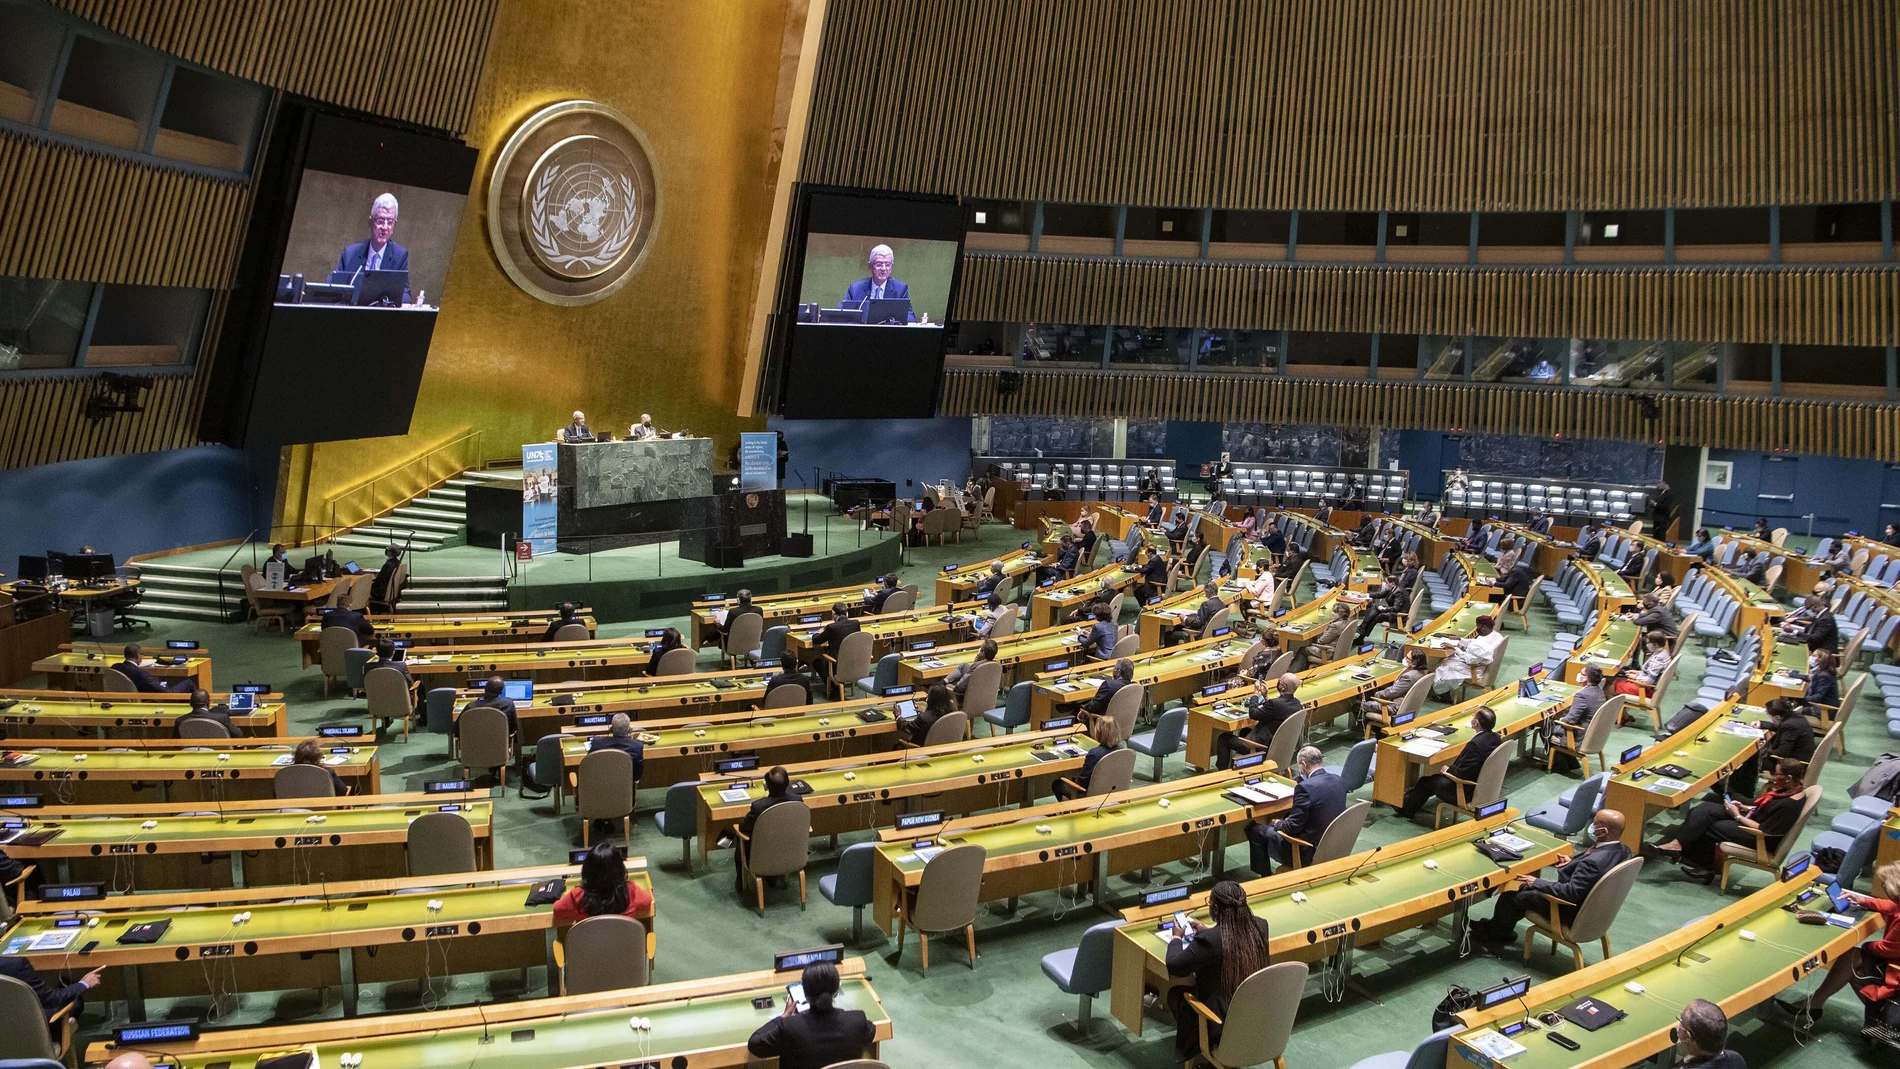 Imagen de la Asamblea General de Naciones Unidas que ayer celebró el 75º aniversario de su fundación y hoy arranca con las sesiones telemáticas